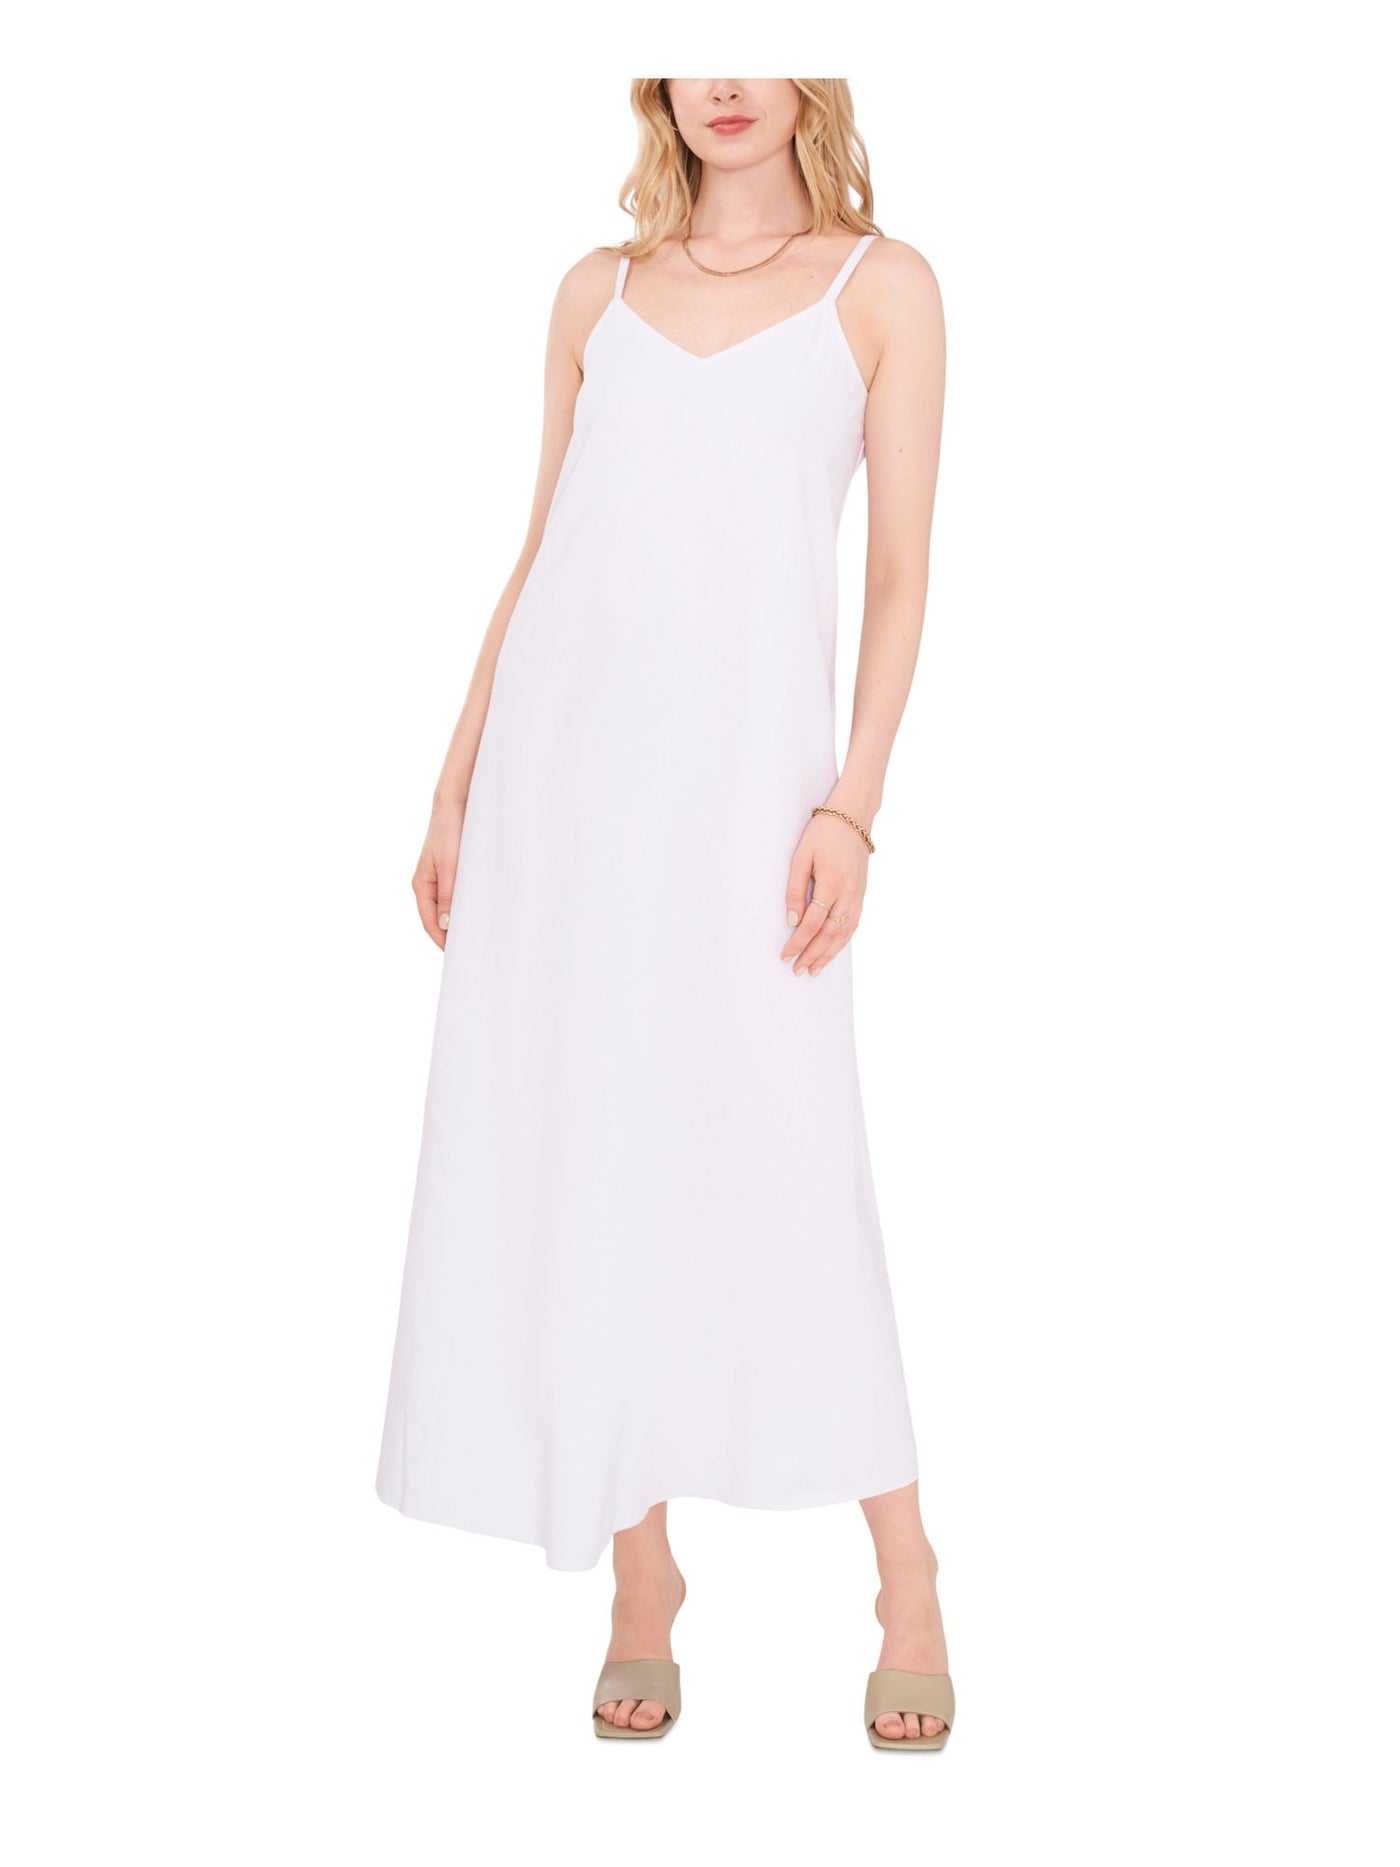 VINCE CAMUTO Womens White Sleeveless V Neck Maxi Shift Dress XS